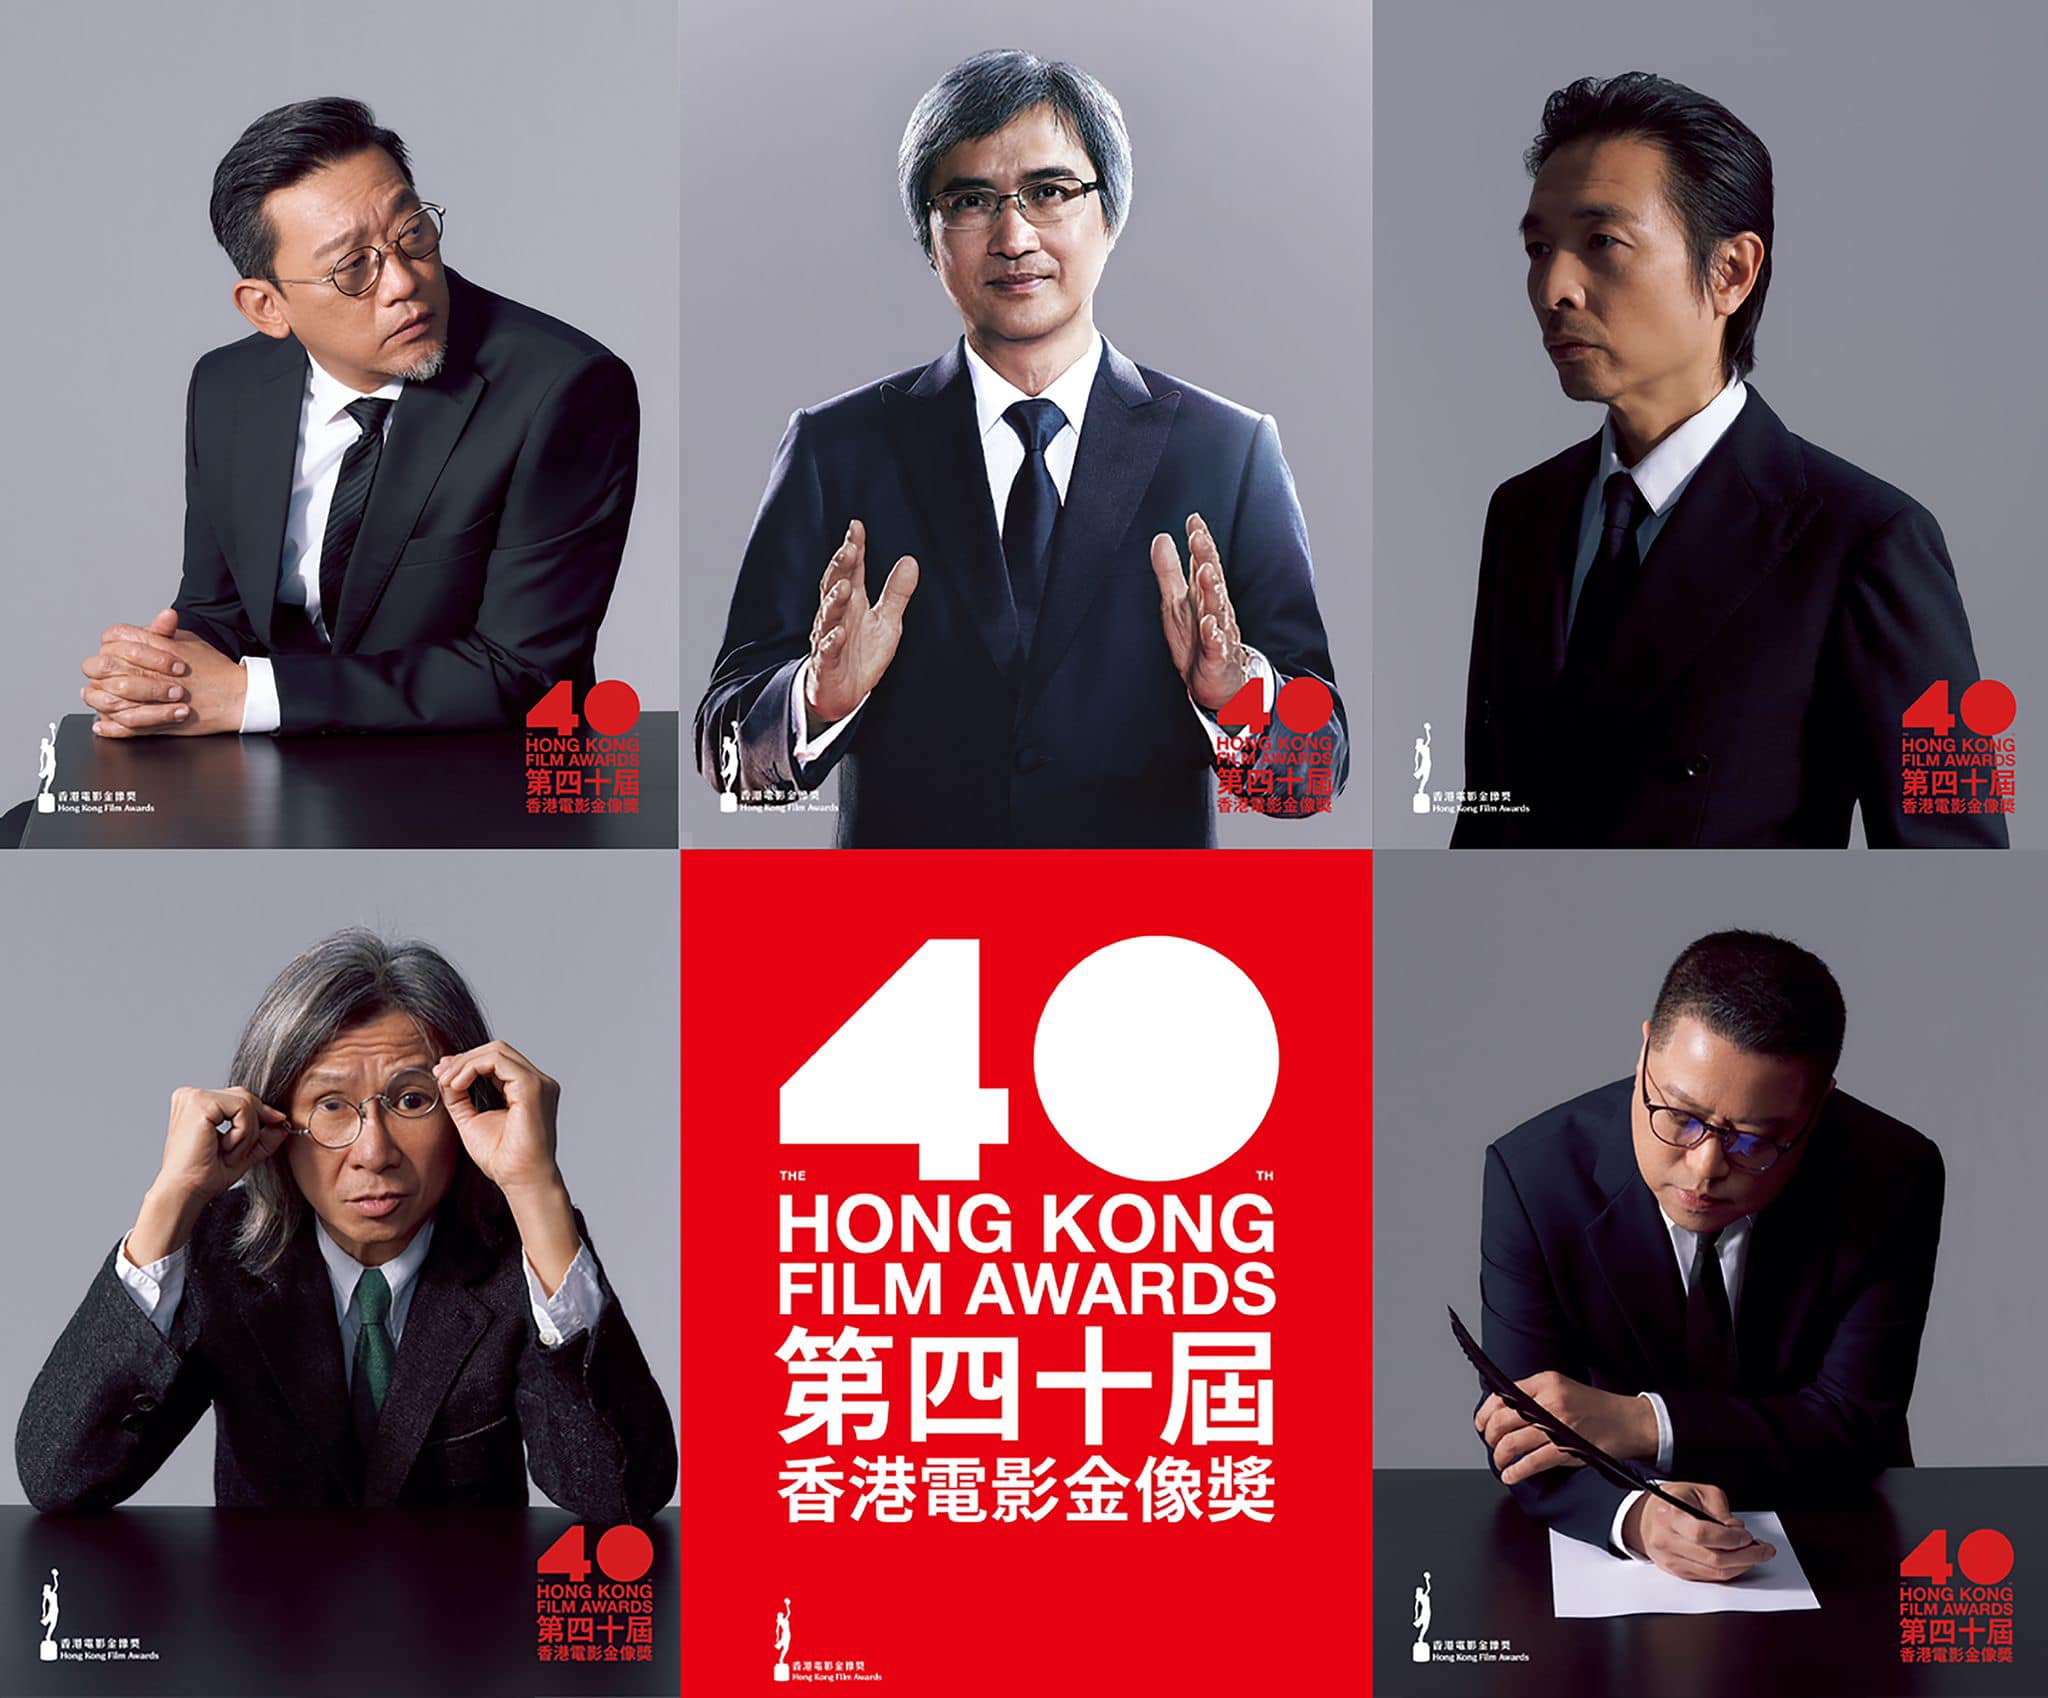 THE 40TH HONG KONG FILM AWARDS 2022